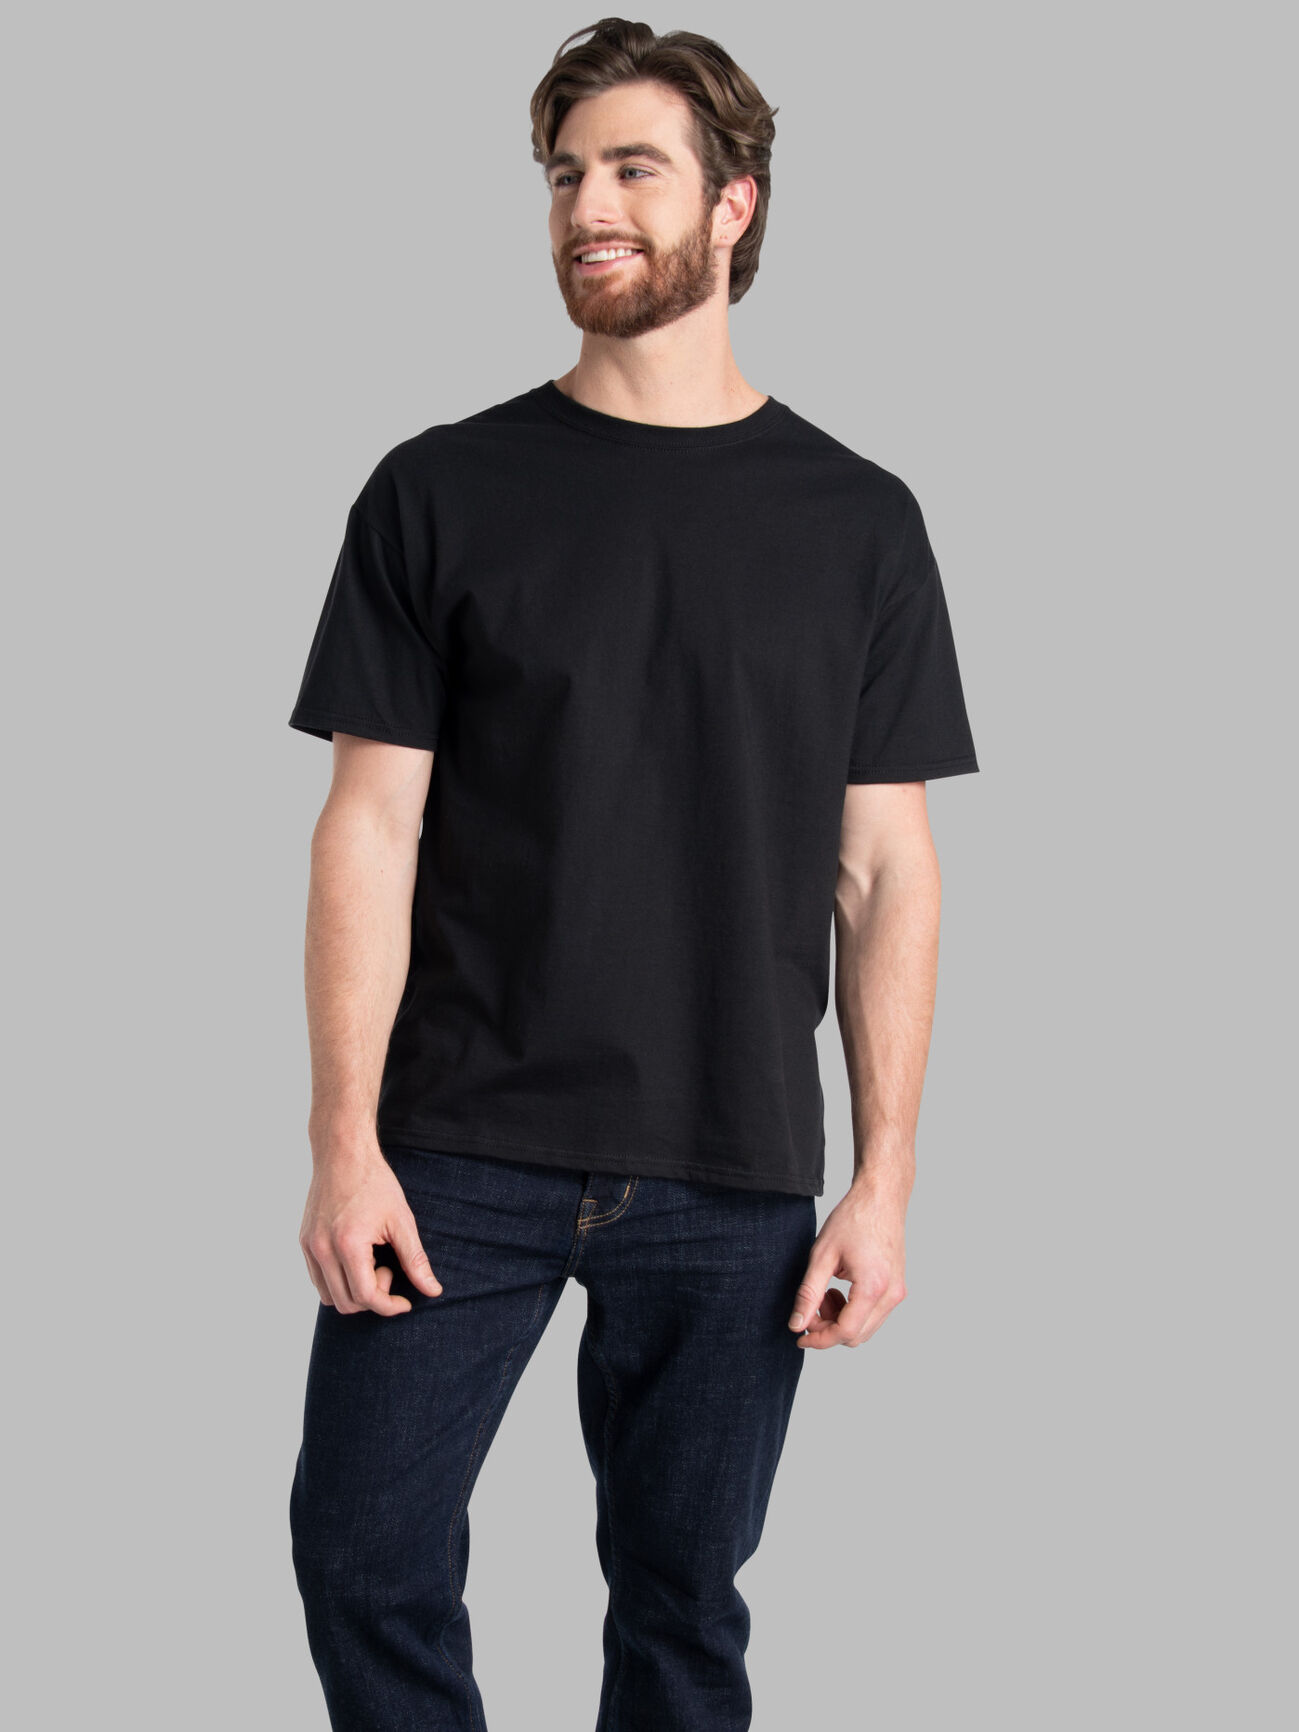 hide-m  LAYER-0 Men Long Sleeve T-Shirt 75, black cotton